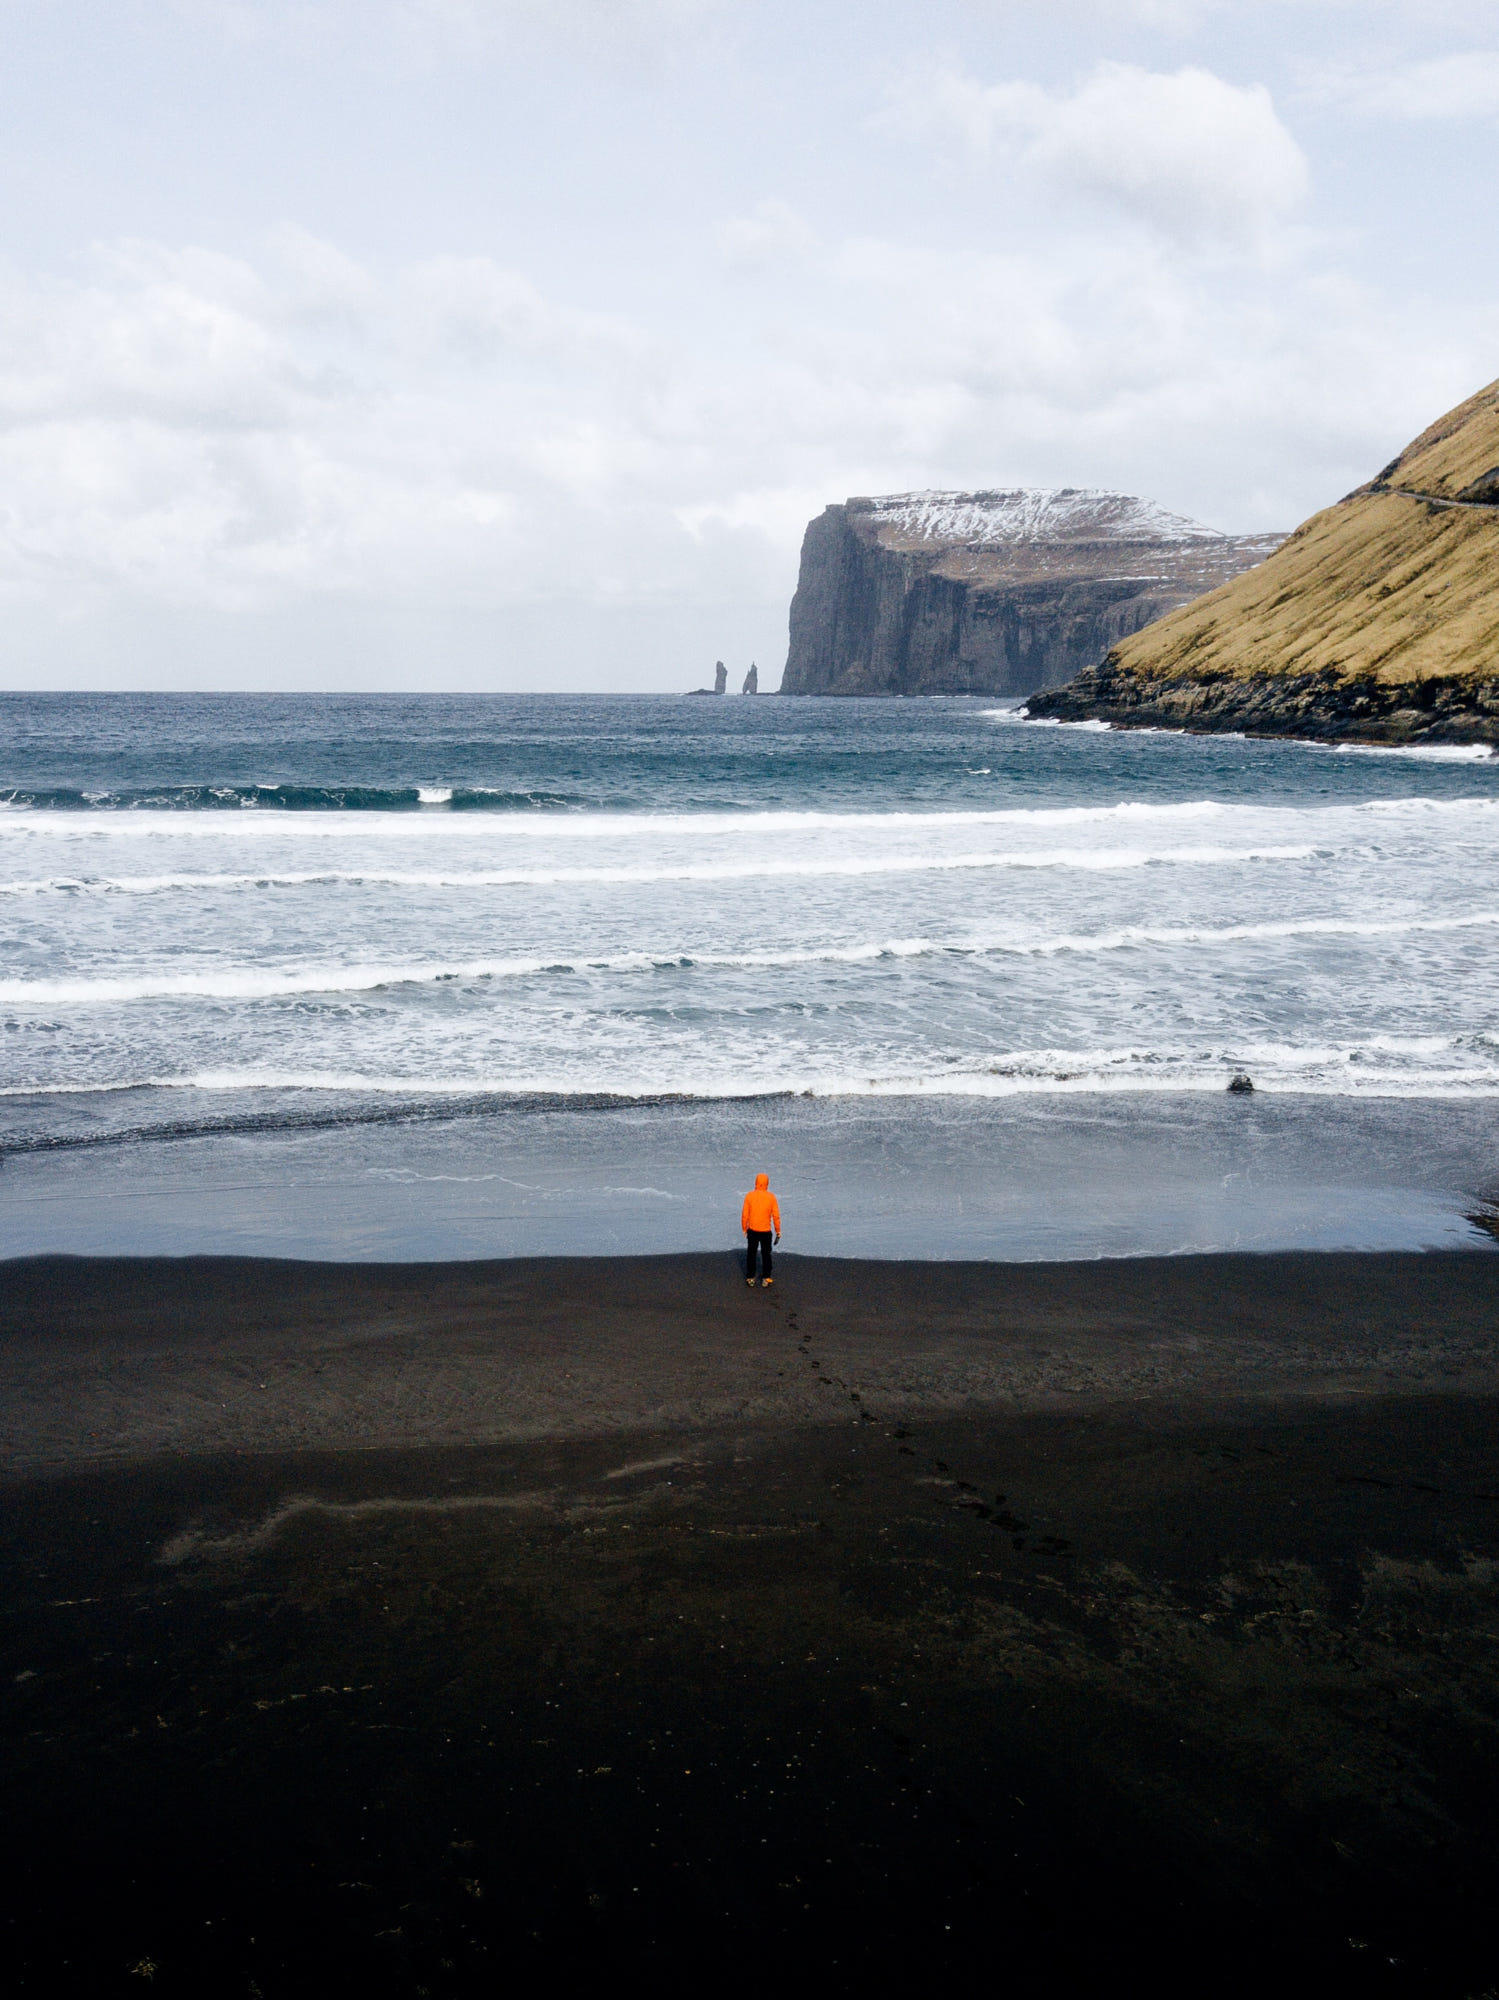 Join my Faroe Islands Workshop/learn more about photography https://lyesk.com/faroe-islands-workshop